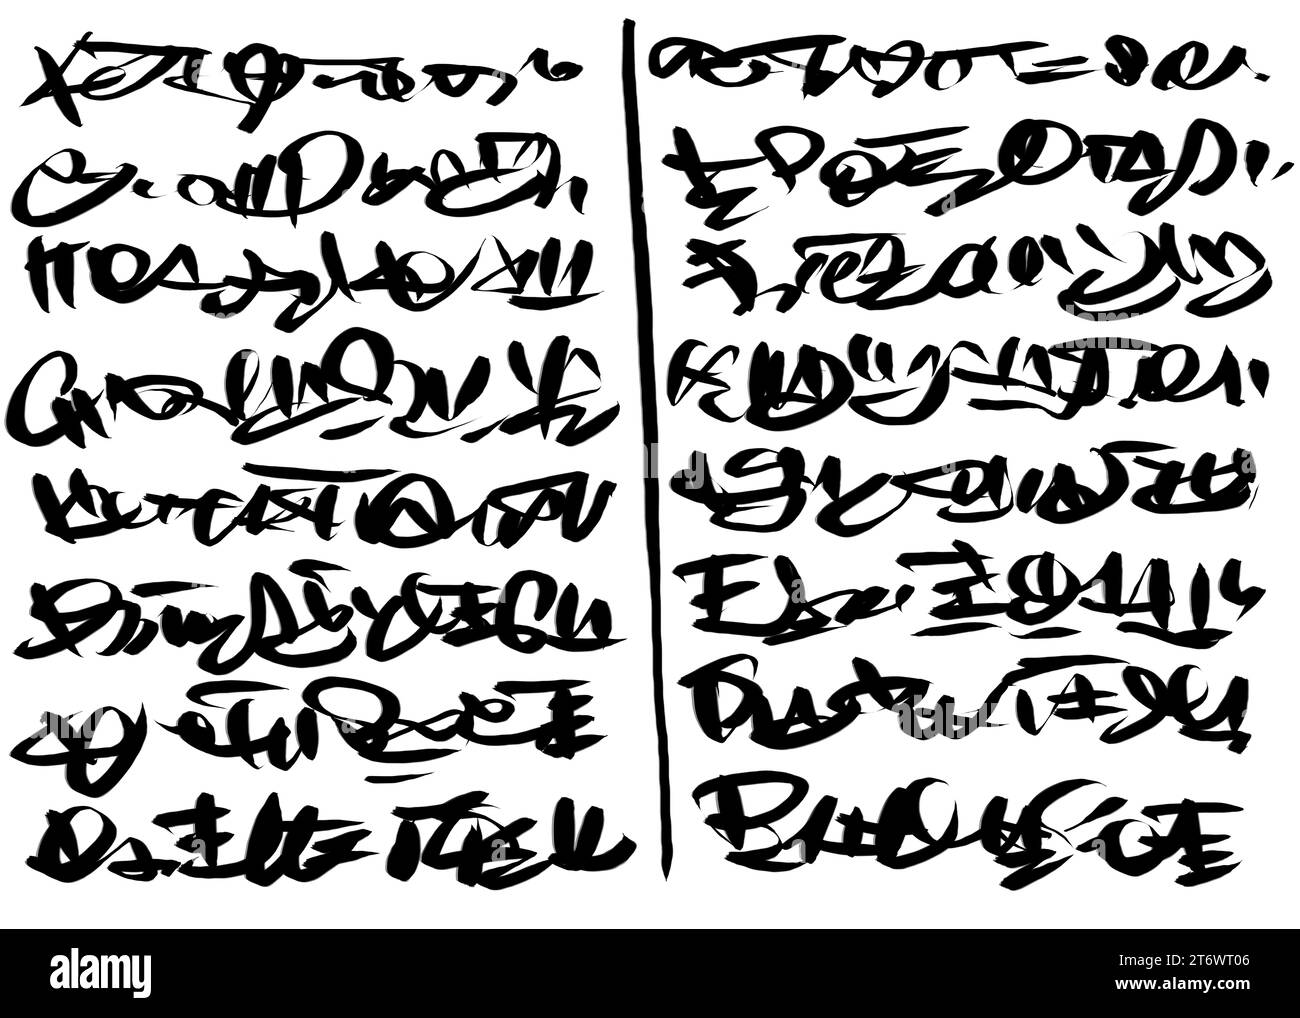 Texte manuscrit abstrait, notes, griffons, écriture extraterrestre Banque D'Images